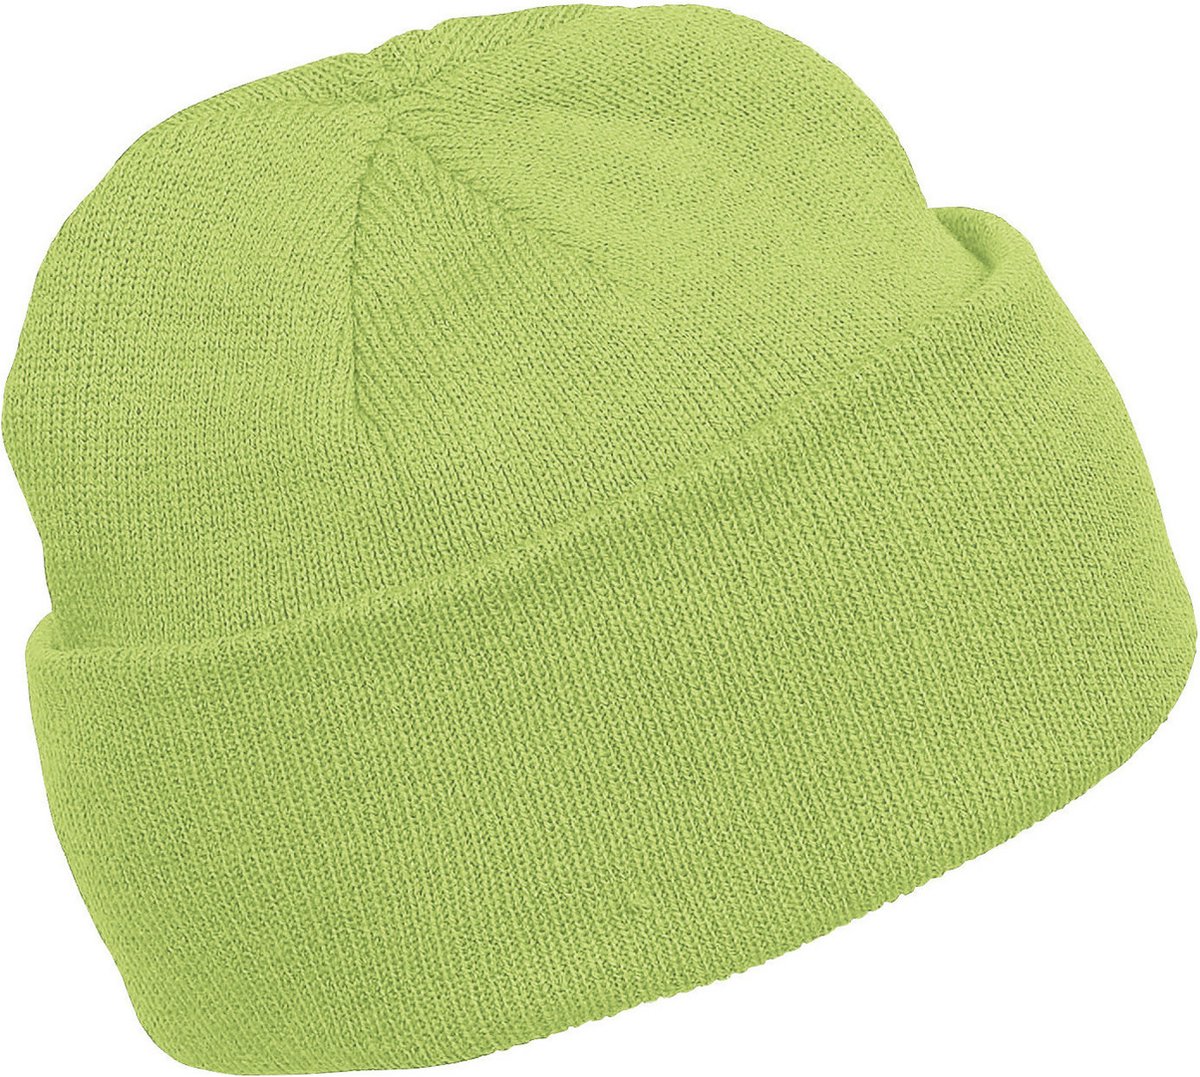 K-up Hats Wintermuts Beanie Yukon - lime groen - heren/dames - sterk/zacht/licht gebreid 100% Acryl - Dames/herenmuts